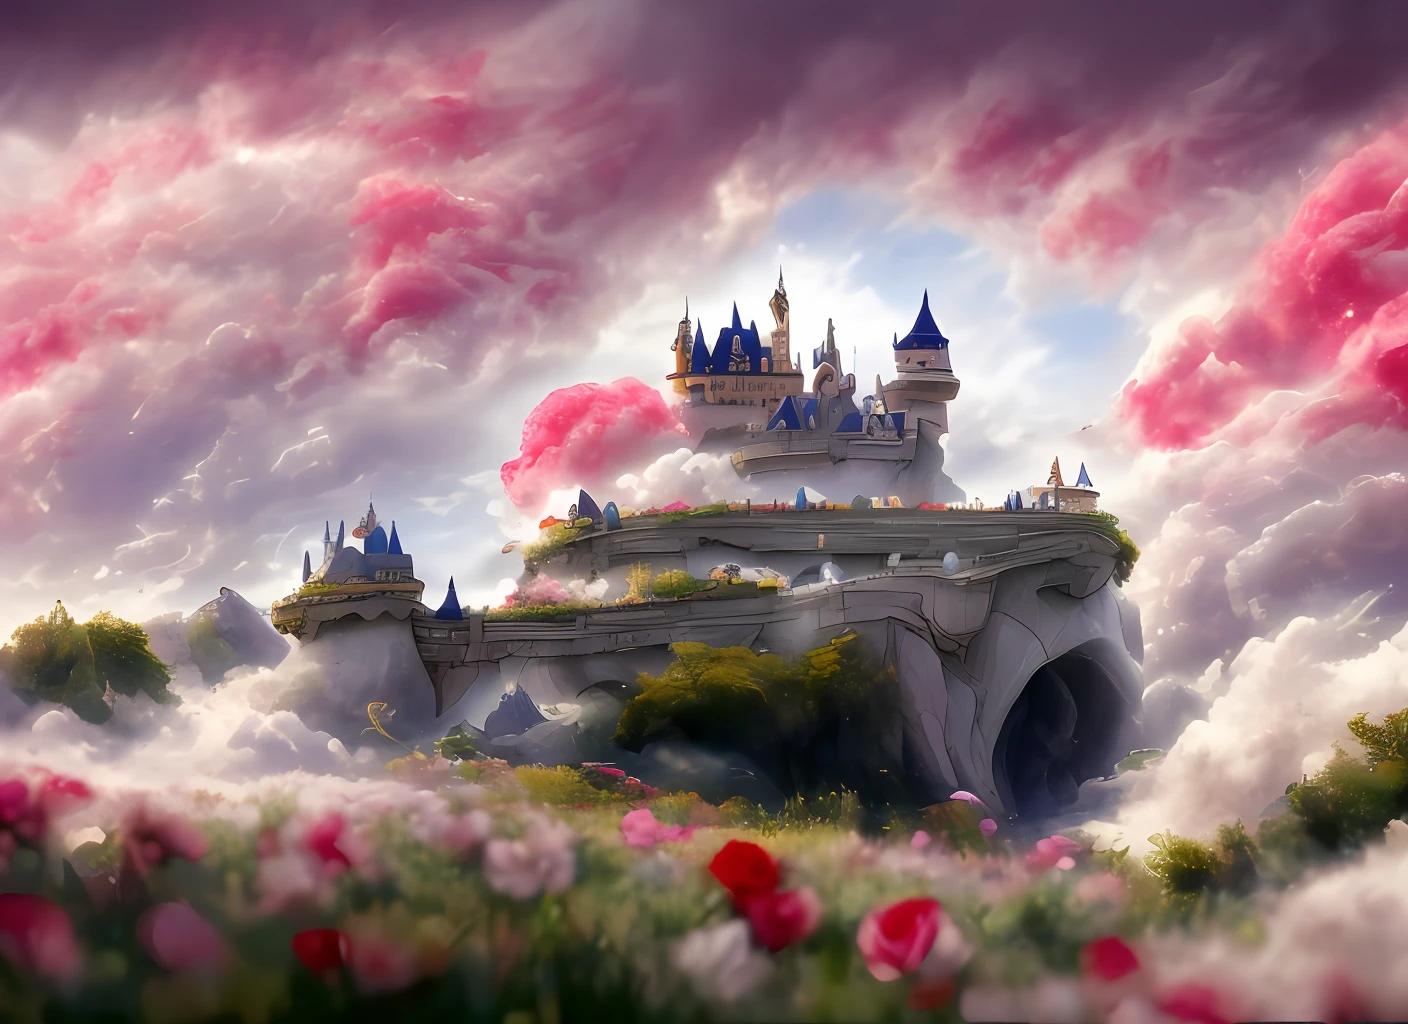 eine Diskothek mit wirbelnden Wolken und Blumen, (himmel rose fantasie schloss), (rote Rosen), (lächerlich), verträumt, Disney, gemalt von Thomas Kincaid, artstation, scharfer Fokus, inspirierende 8k-Tapete,